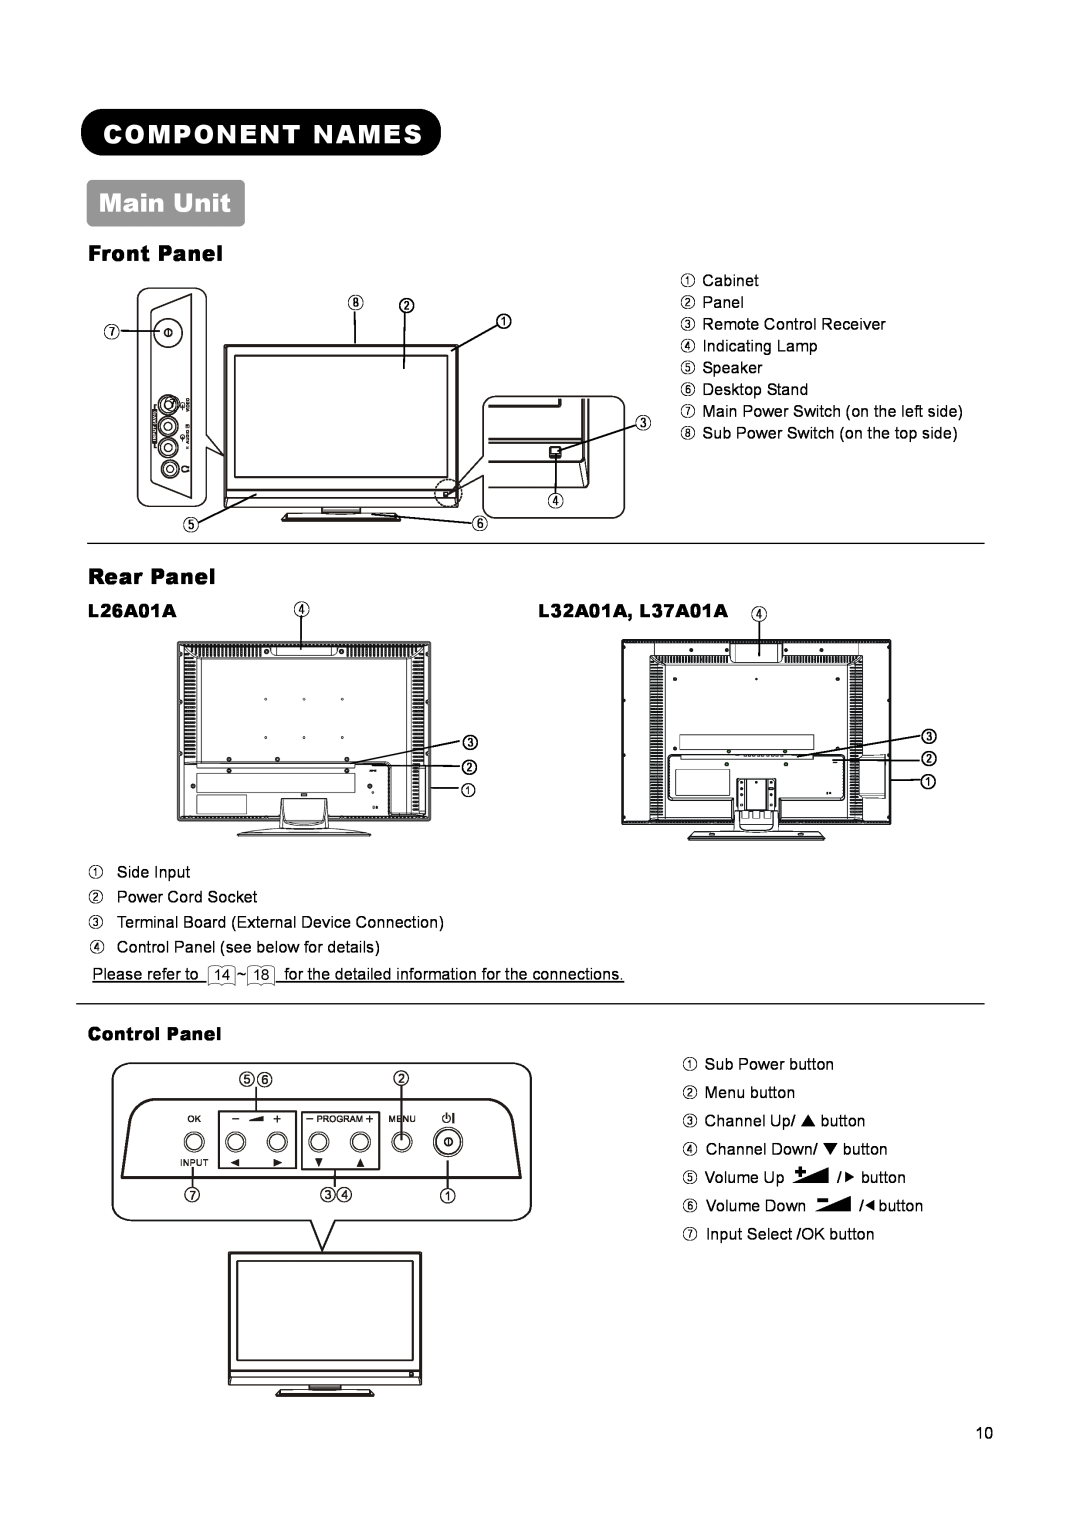 Hitachi user manual COMPONENT NAMES Main Unit, Front Panel, Rear Panel, L26A01A, L32A01A, L37A01A ④, Control Panel 